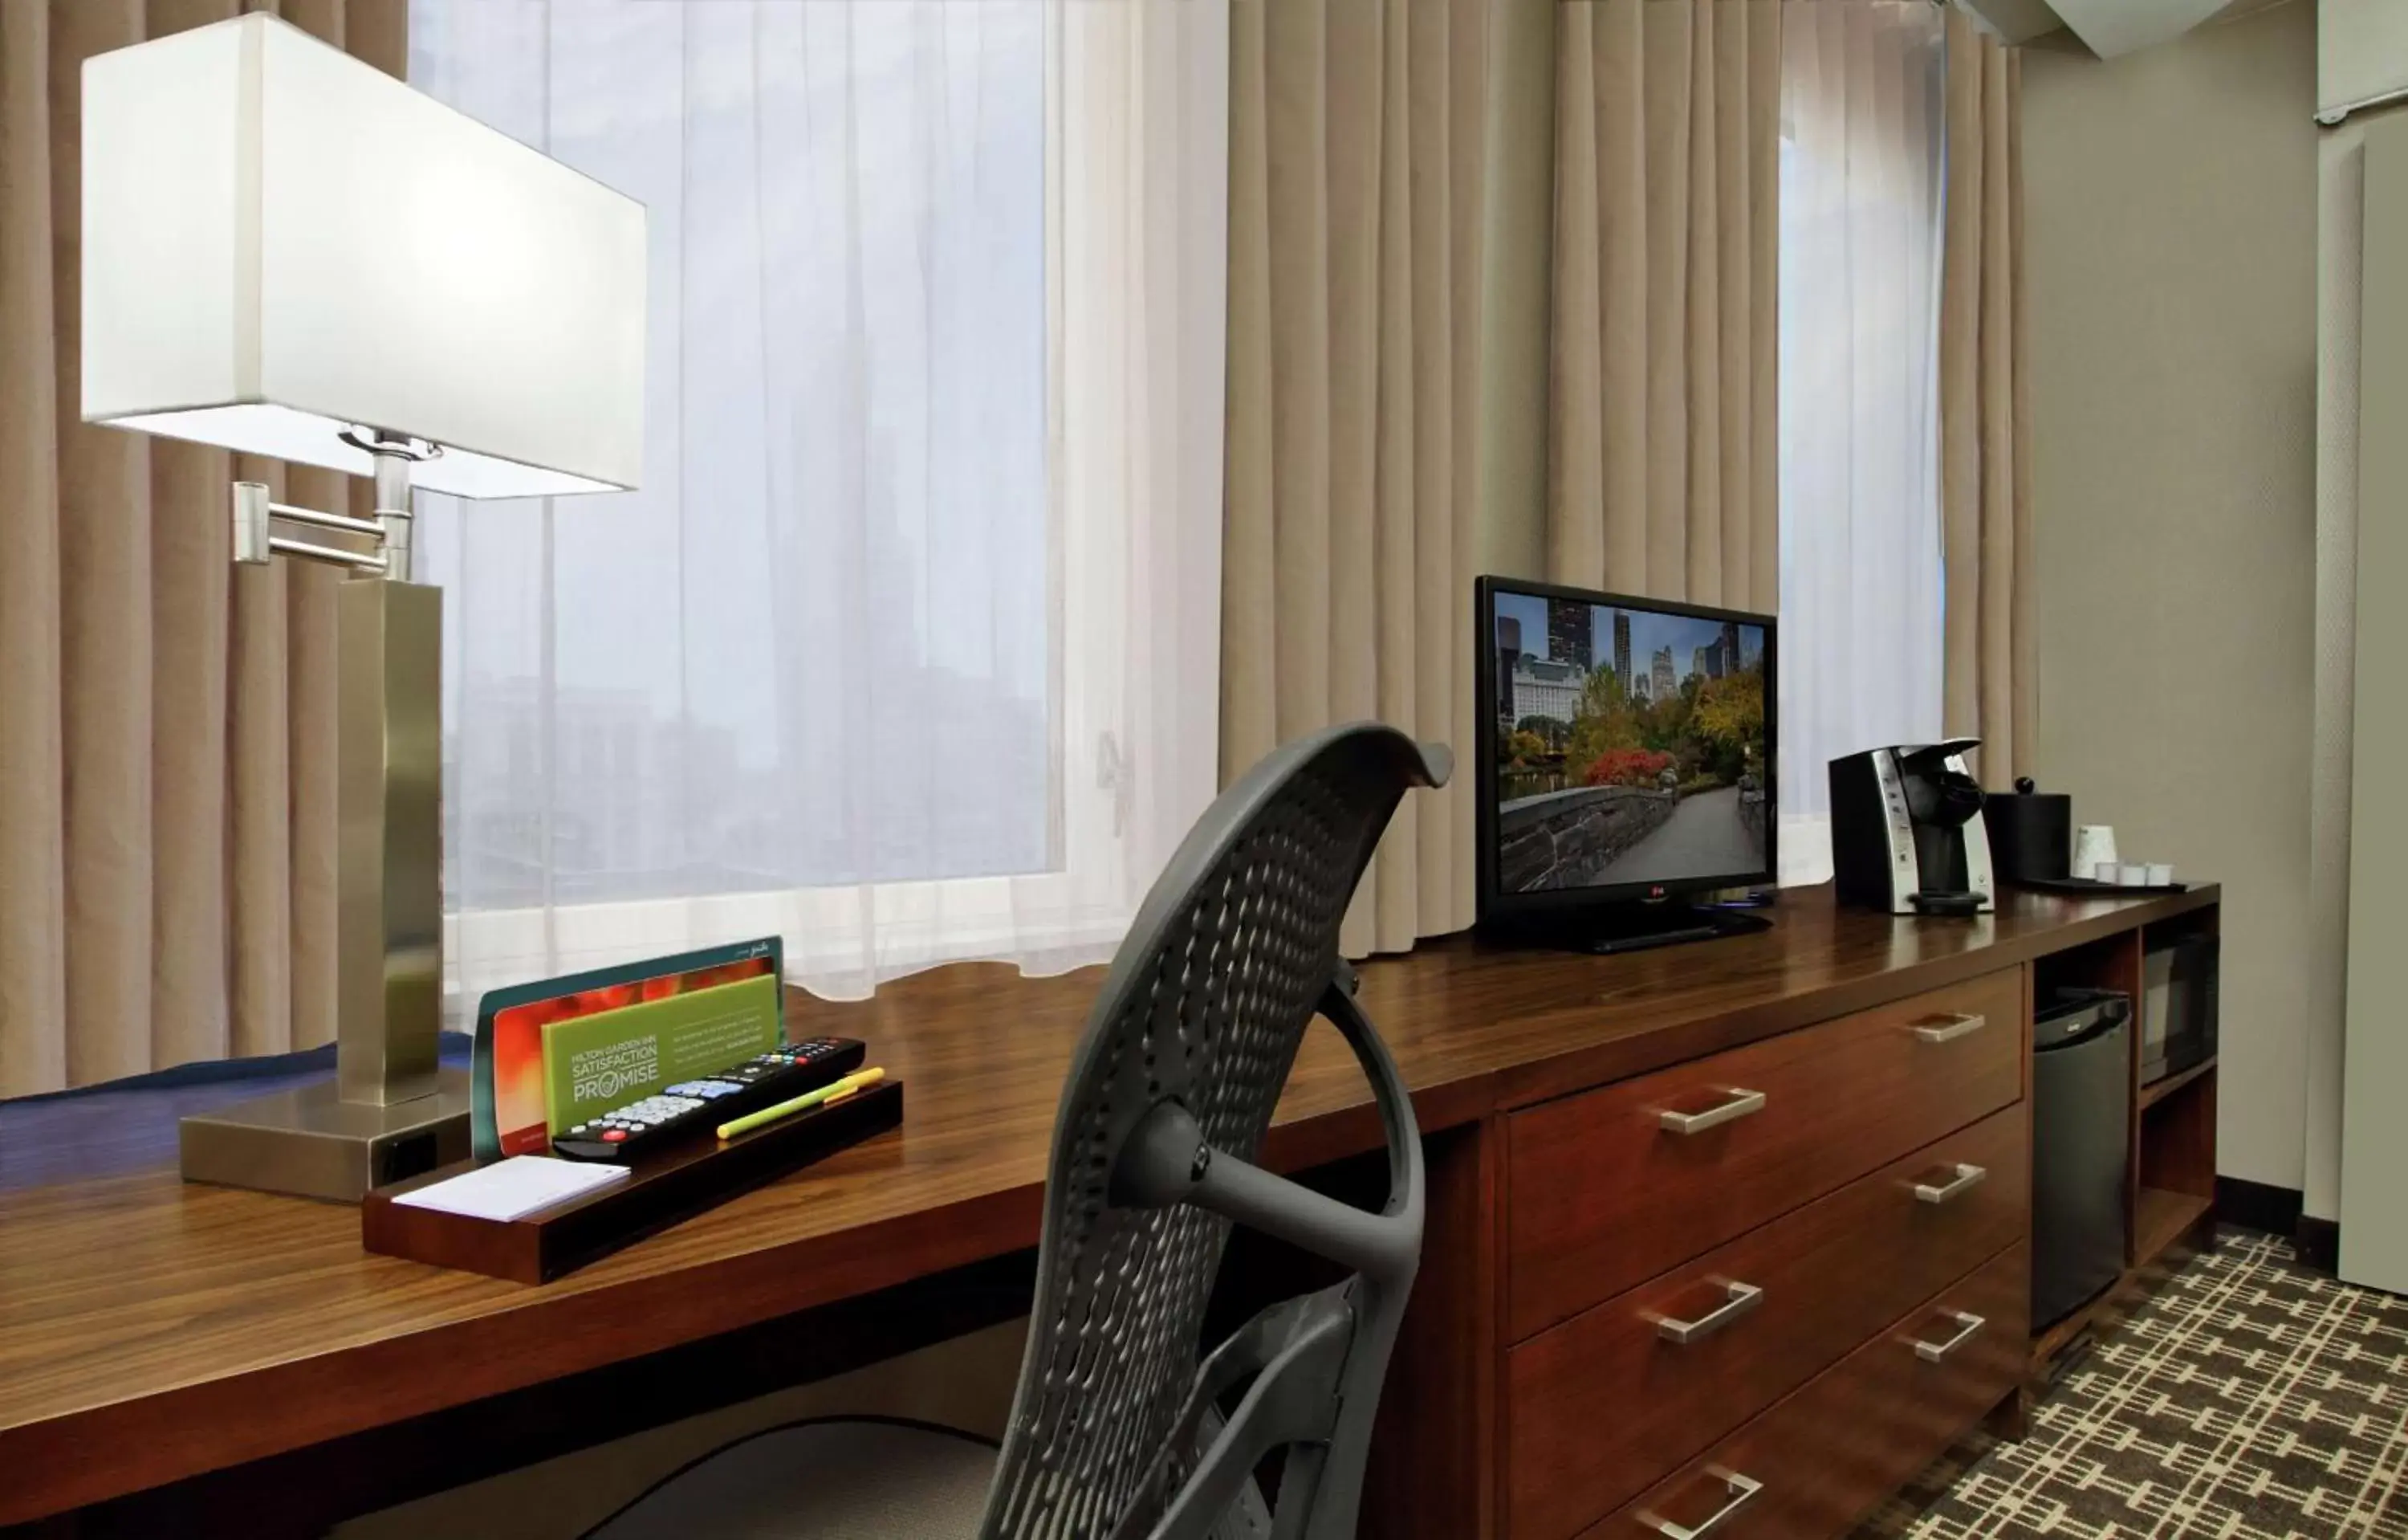 Bedroom, TV/Entertainment Center in Hilton Garden Inn New York/Midtown Park Avenue